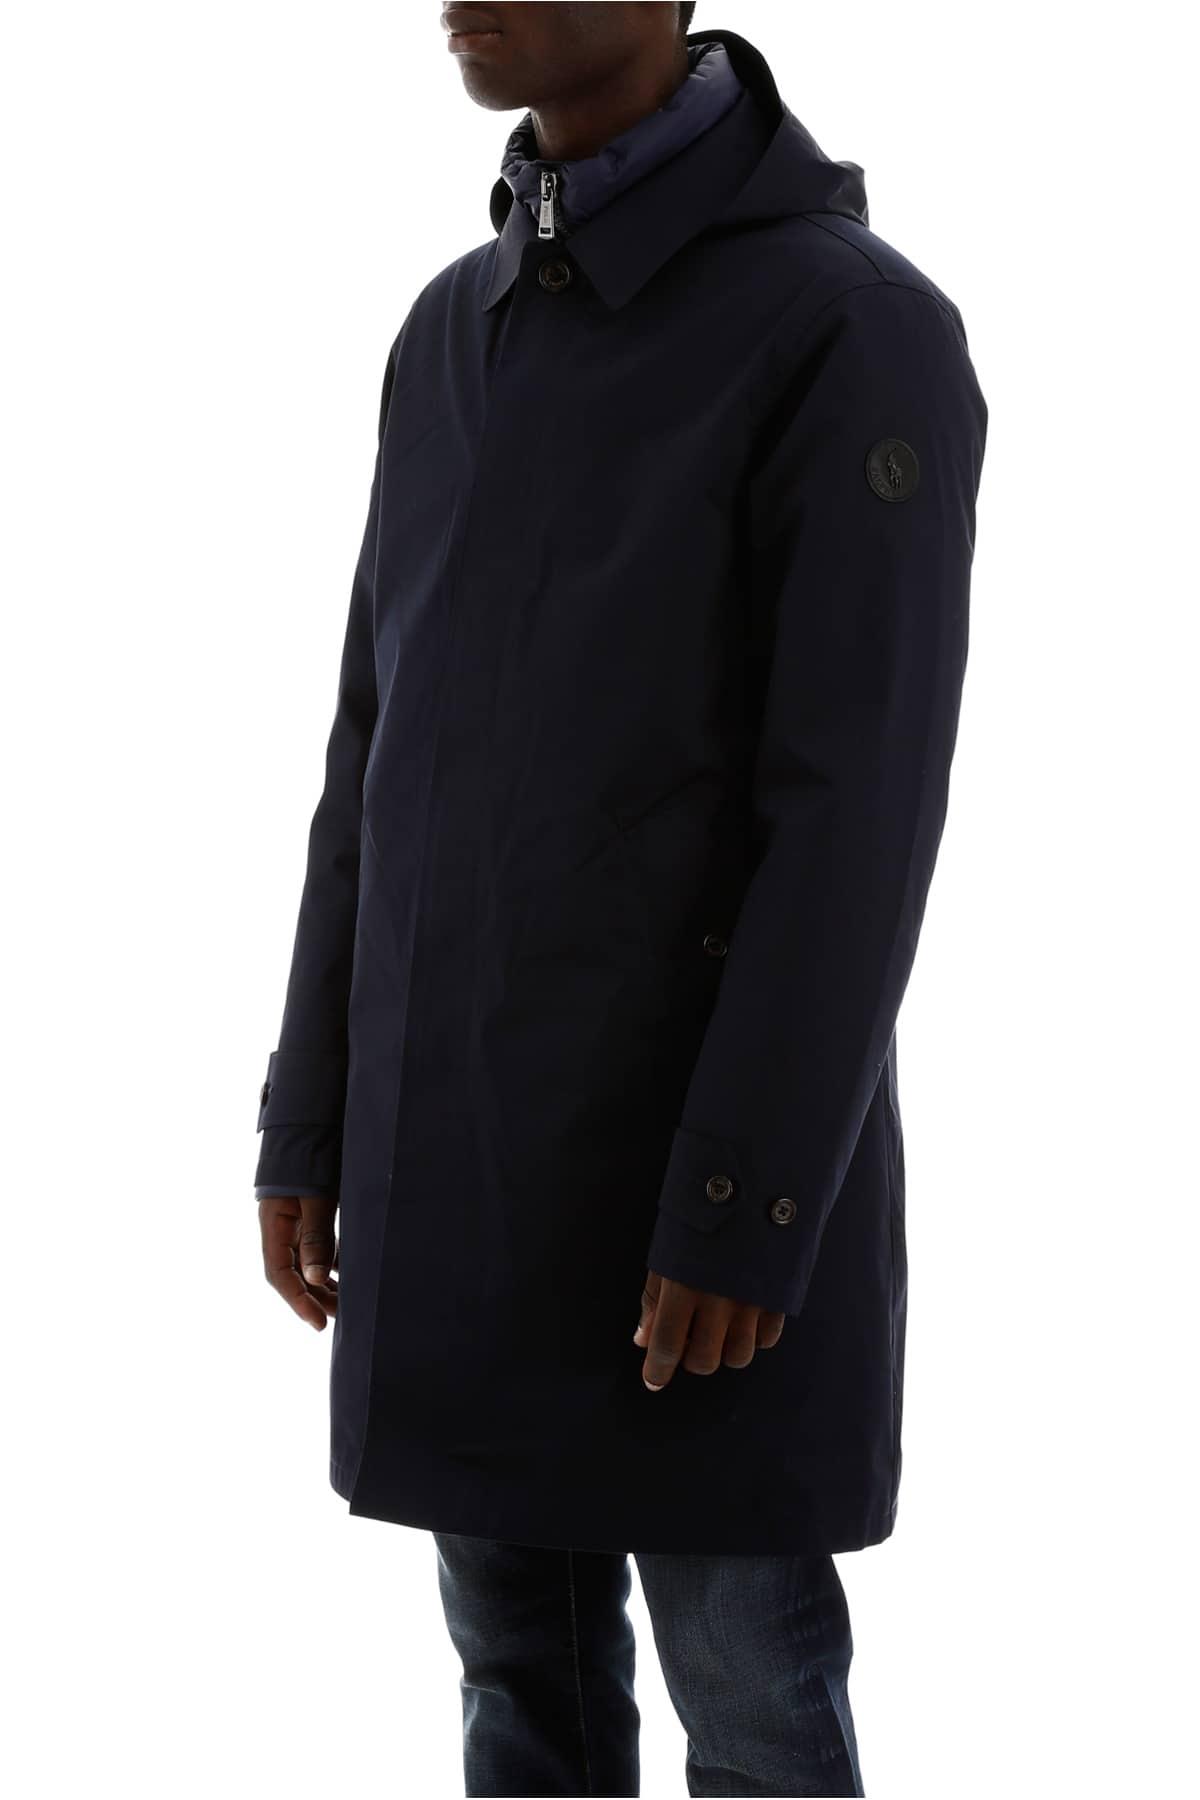 Polo Ralph Lauren 2 In 1 Coat for Men Lyst Australia